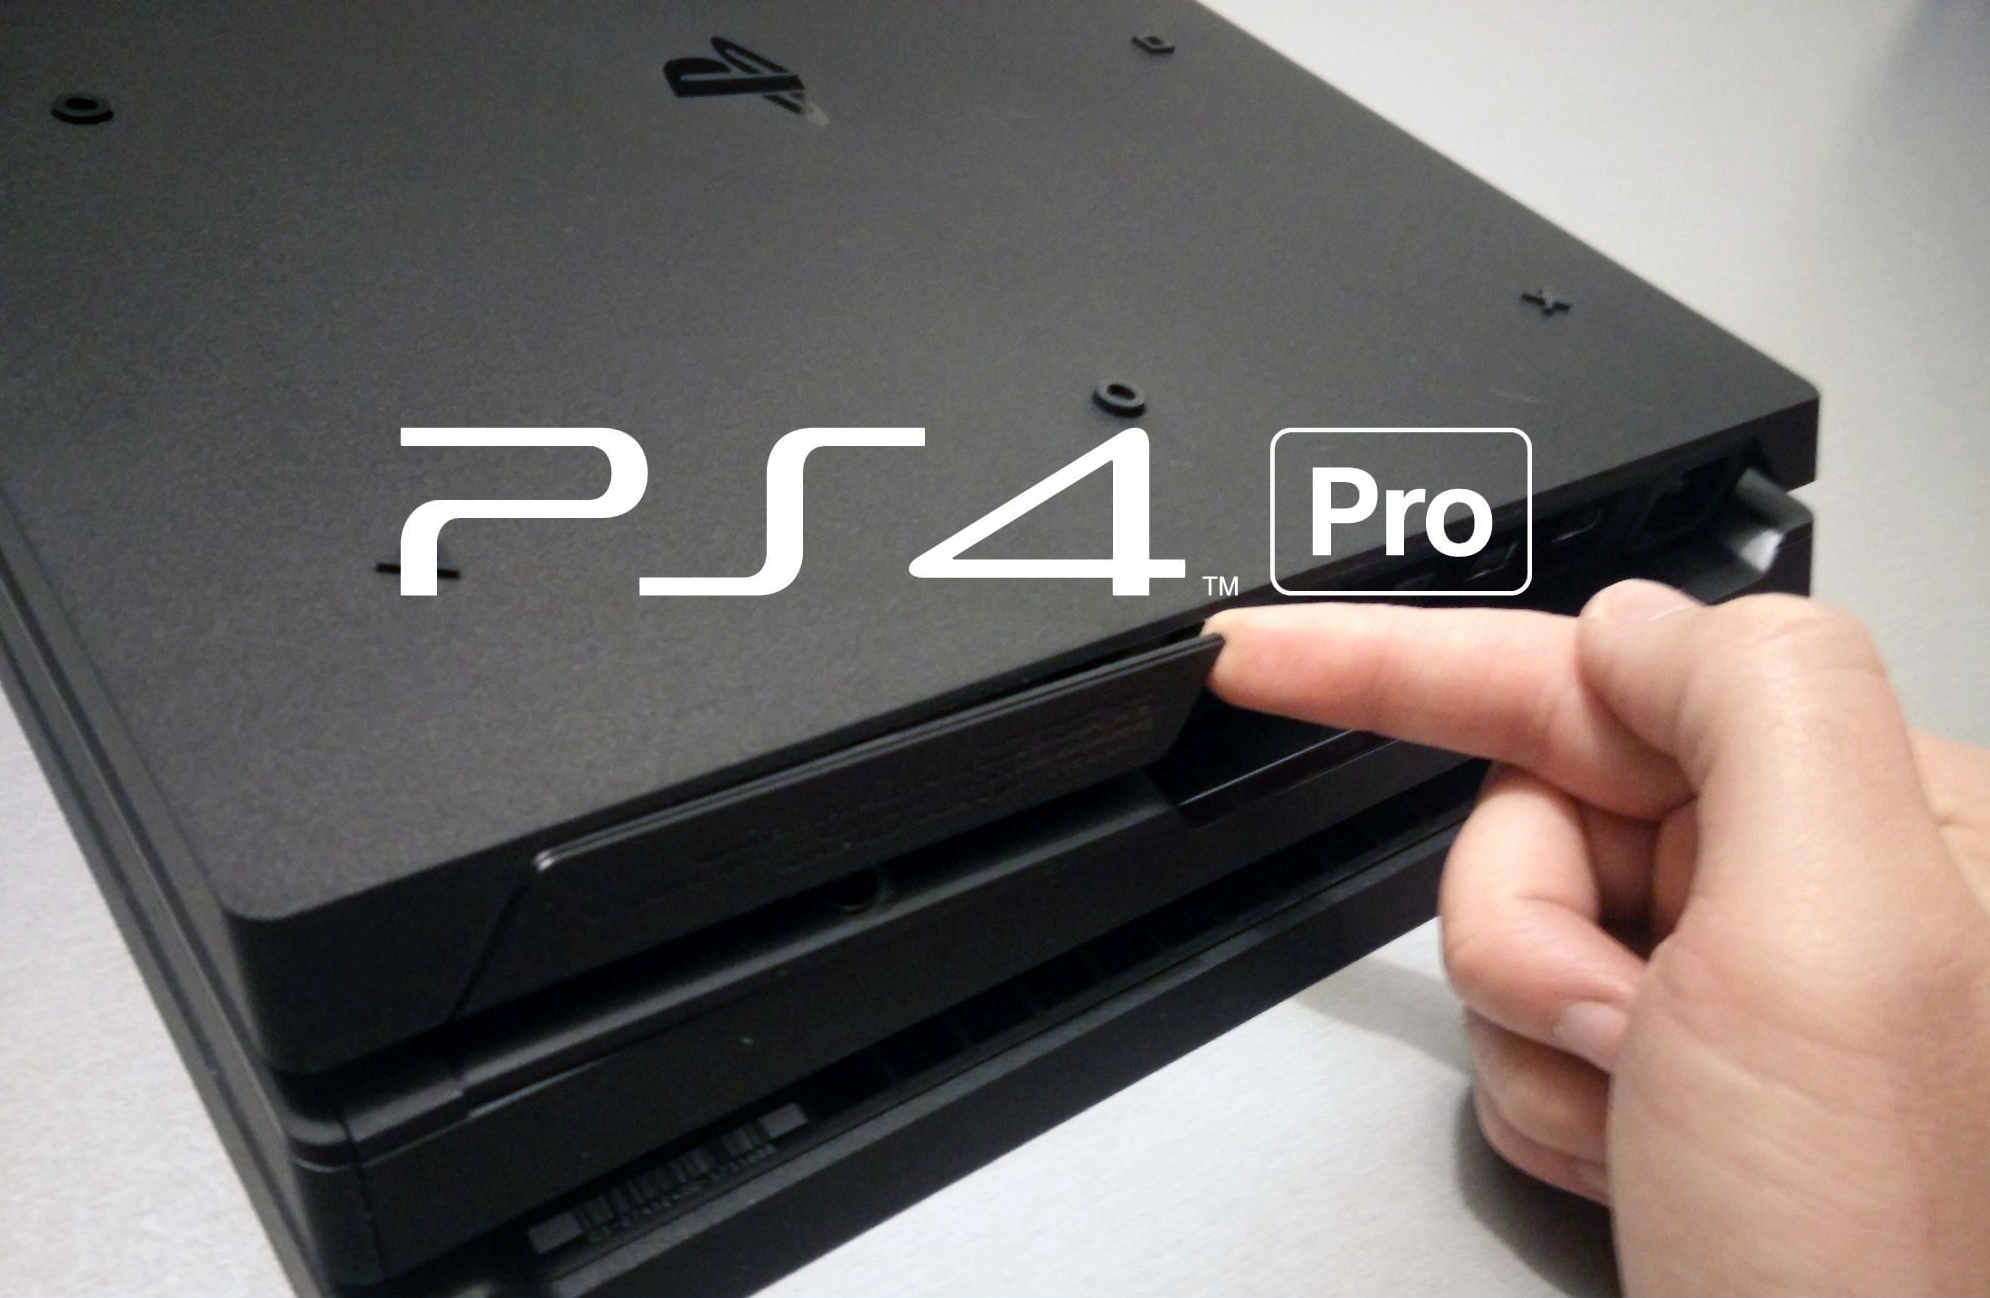 Sony] PS4 – Changer le Disque Dur Interne ou Passer de la PS4 à la